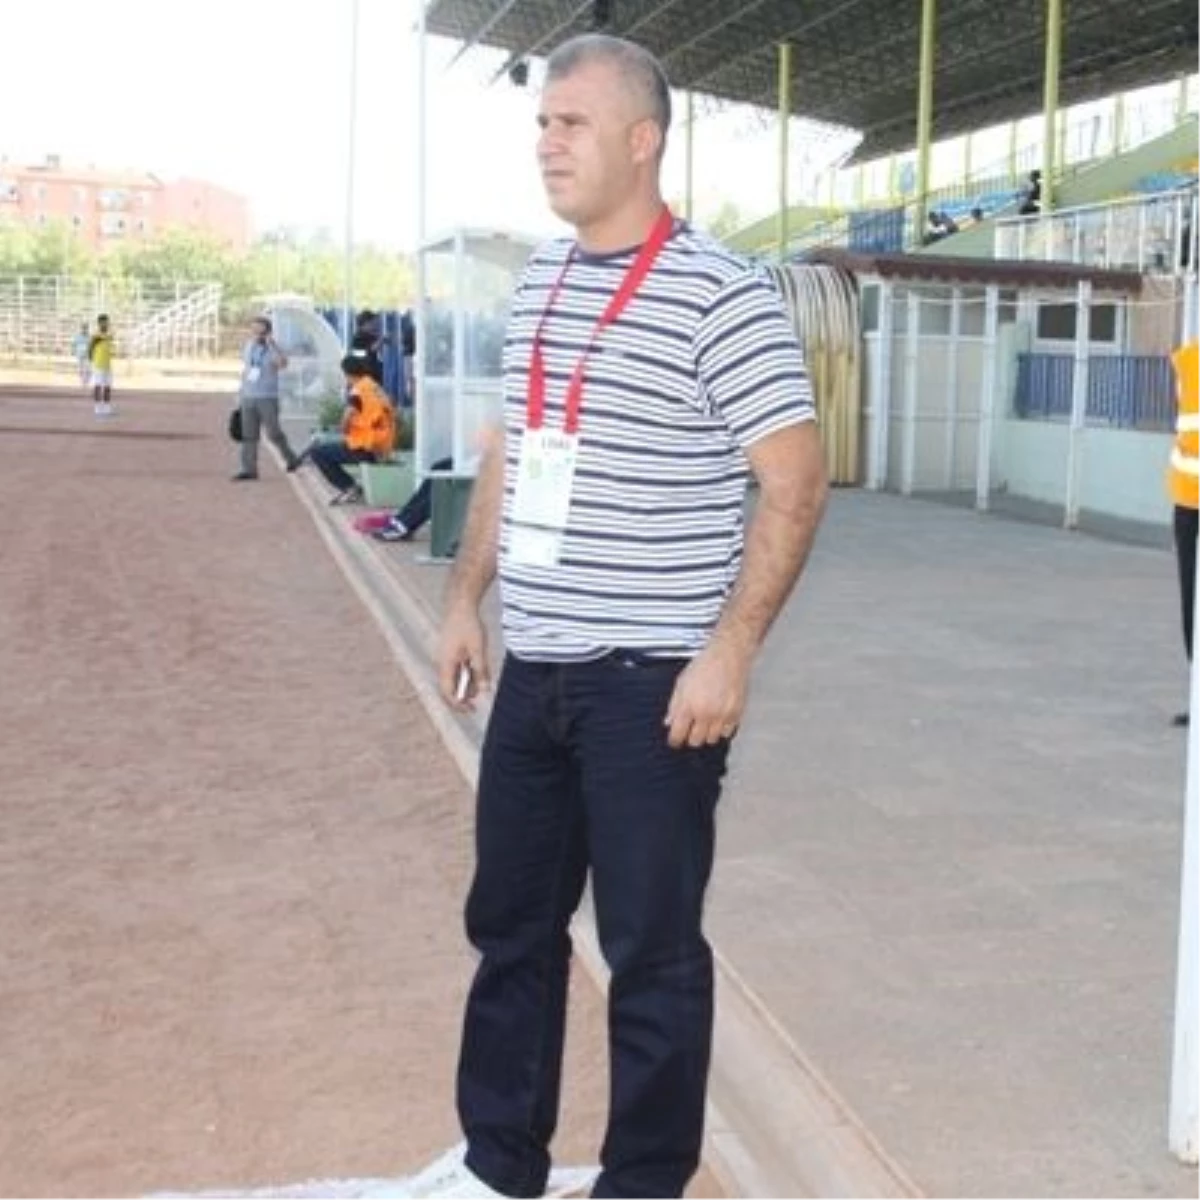 Siirtspor Sportif Direktörü Babaoğlu: "Van Belediyespor Daha İyi Oynadı"